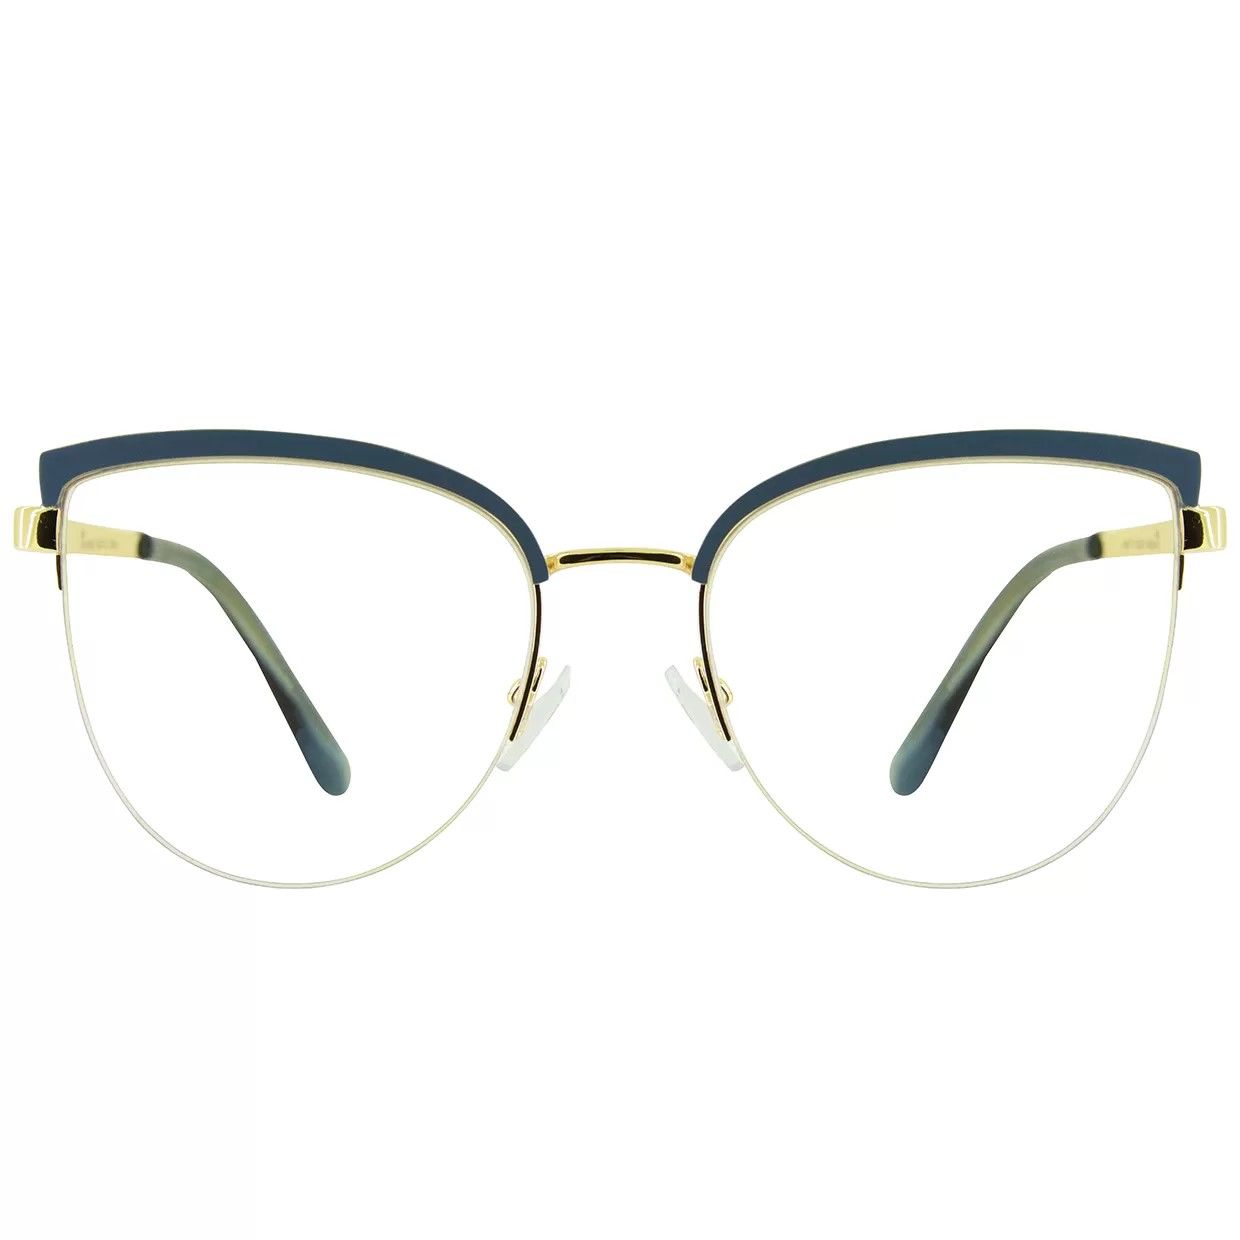 فریم عینک طبی گودلوک مدل 95679 -  - 1